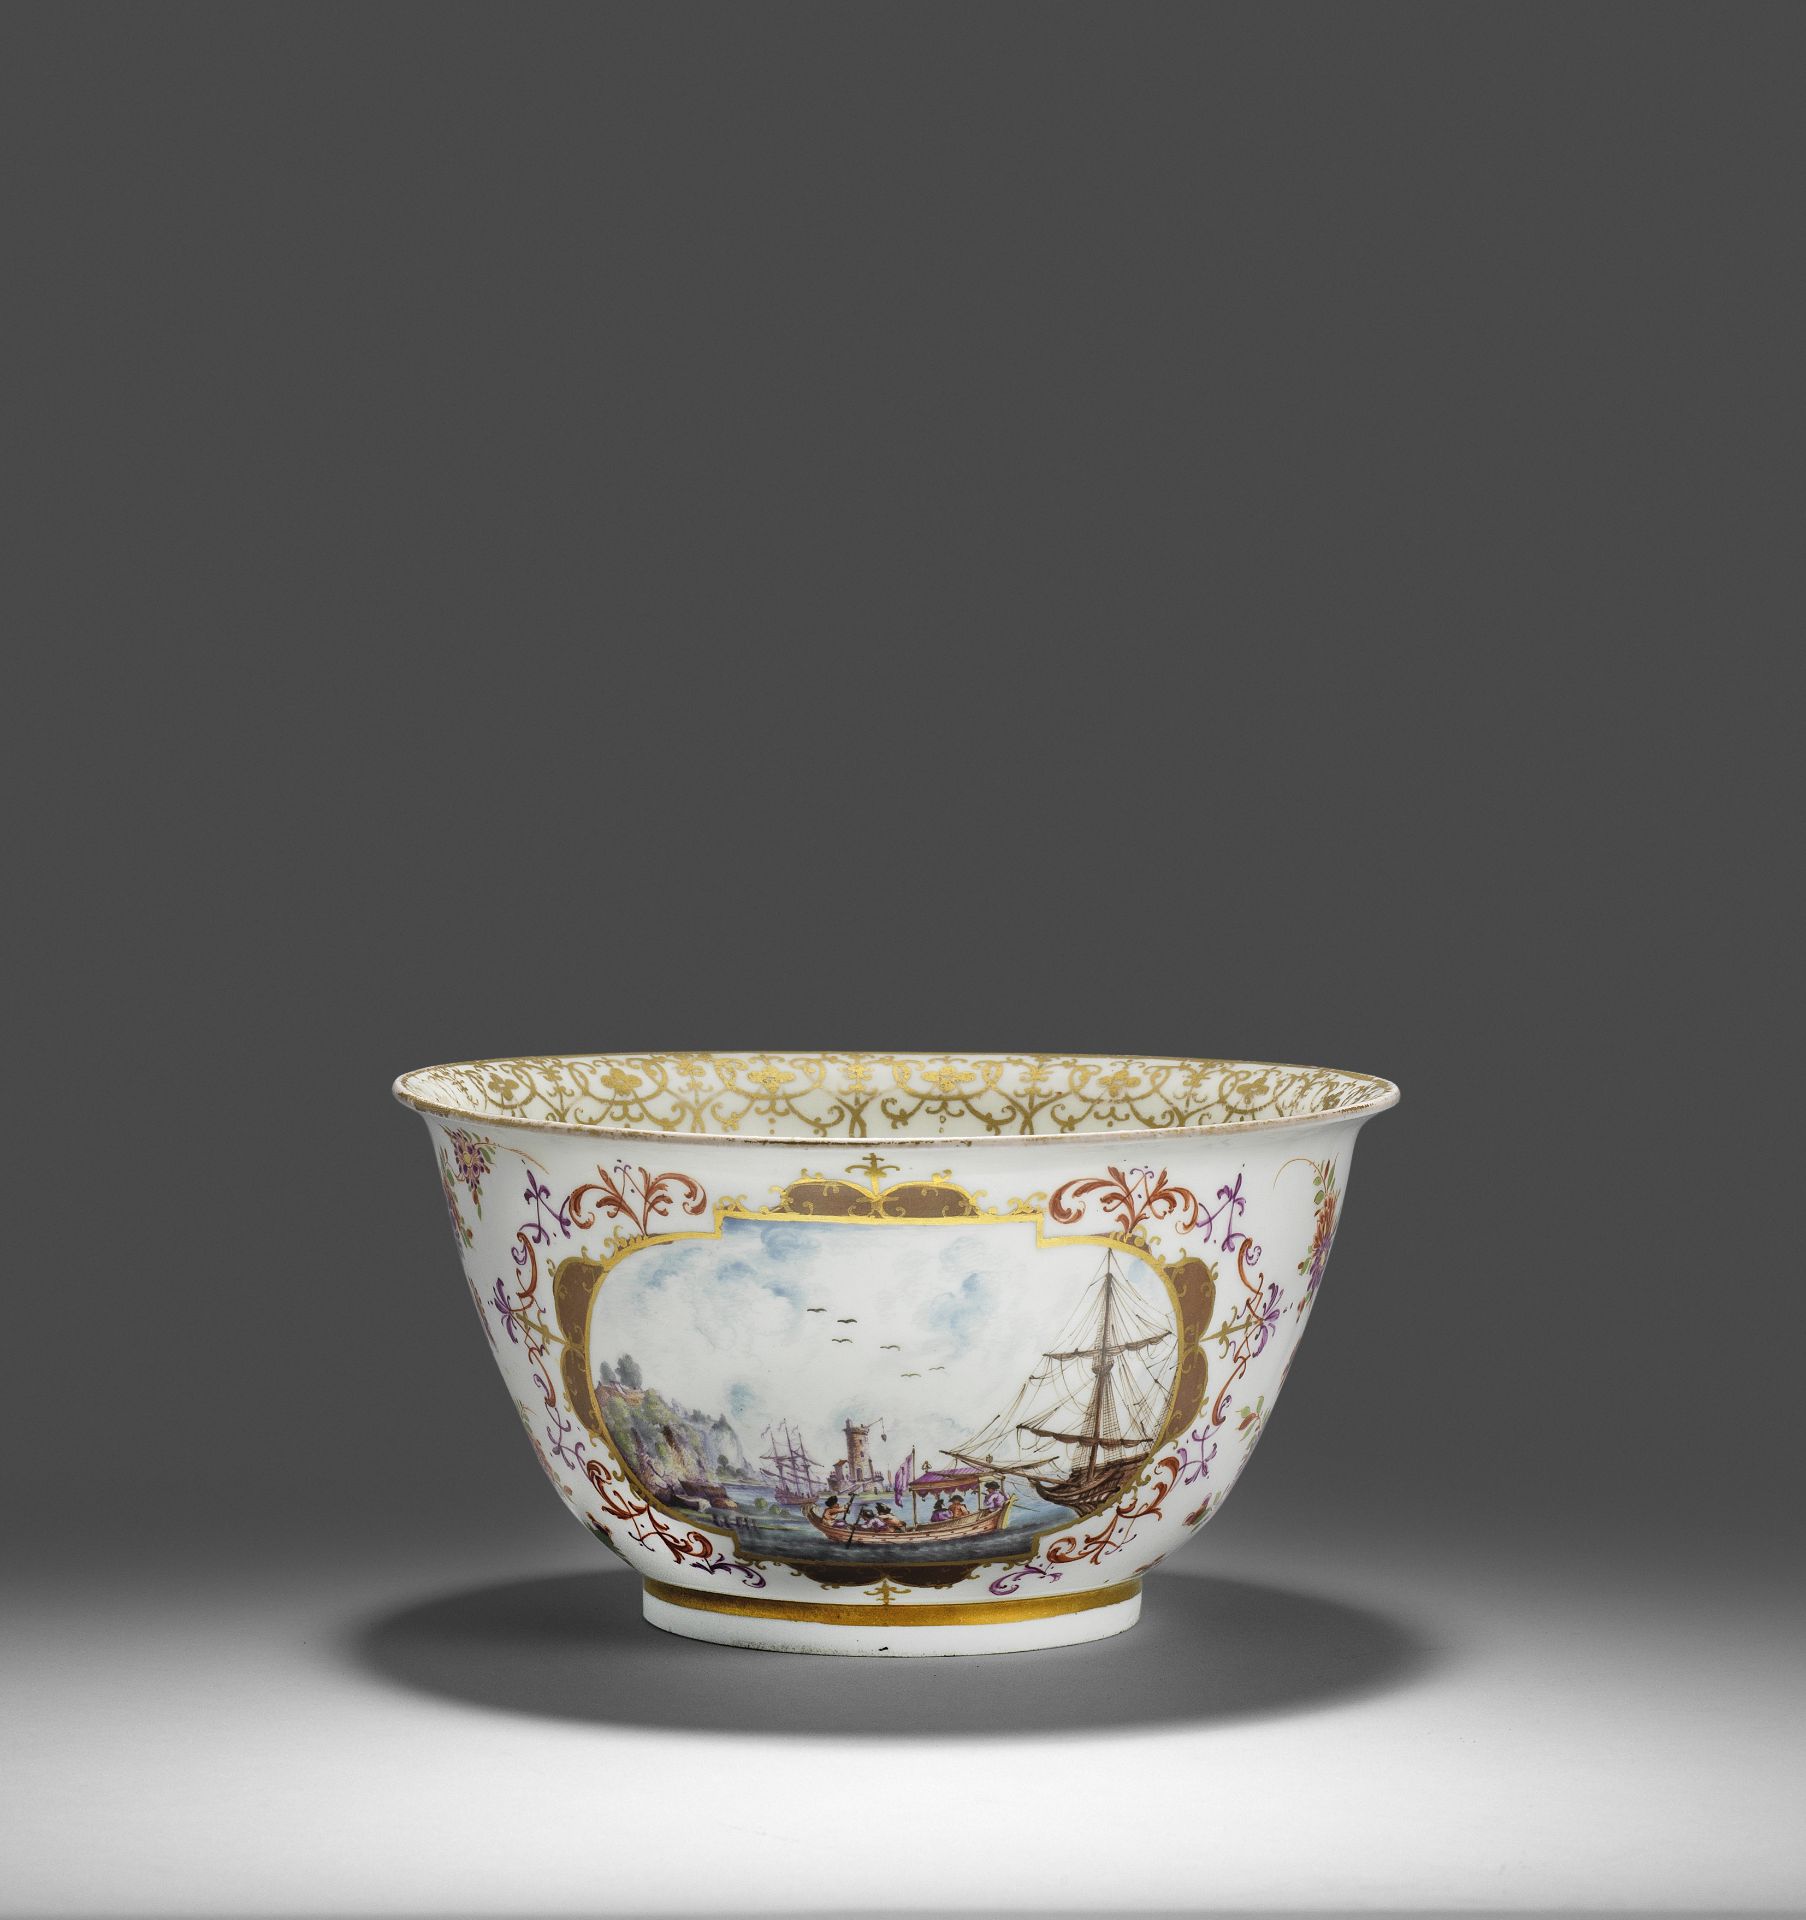 A Meissen waste bowl, circa 1725-30